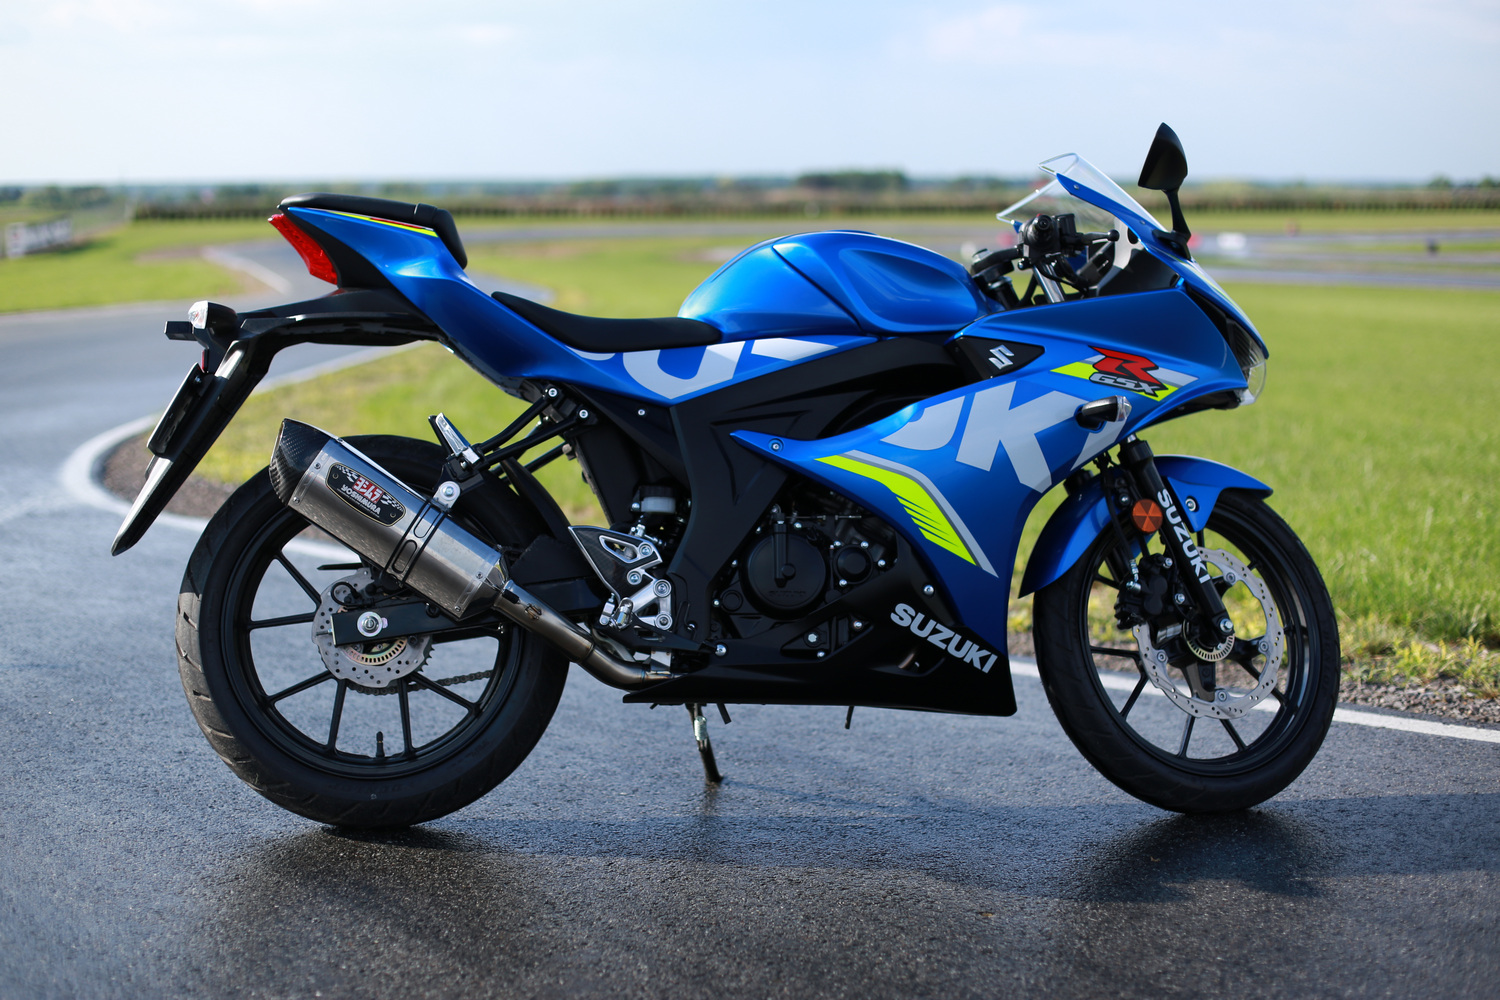 Motocykle Suzuki 2018 test nowości Suzuki na sezon 2018